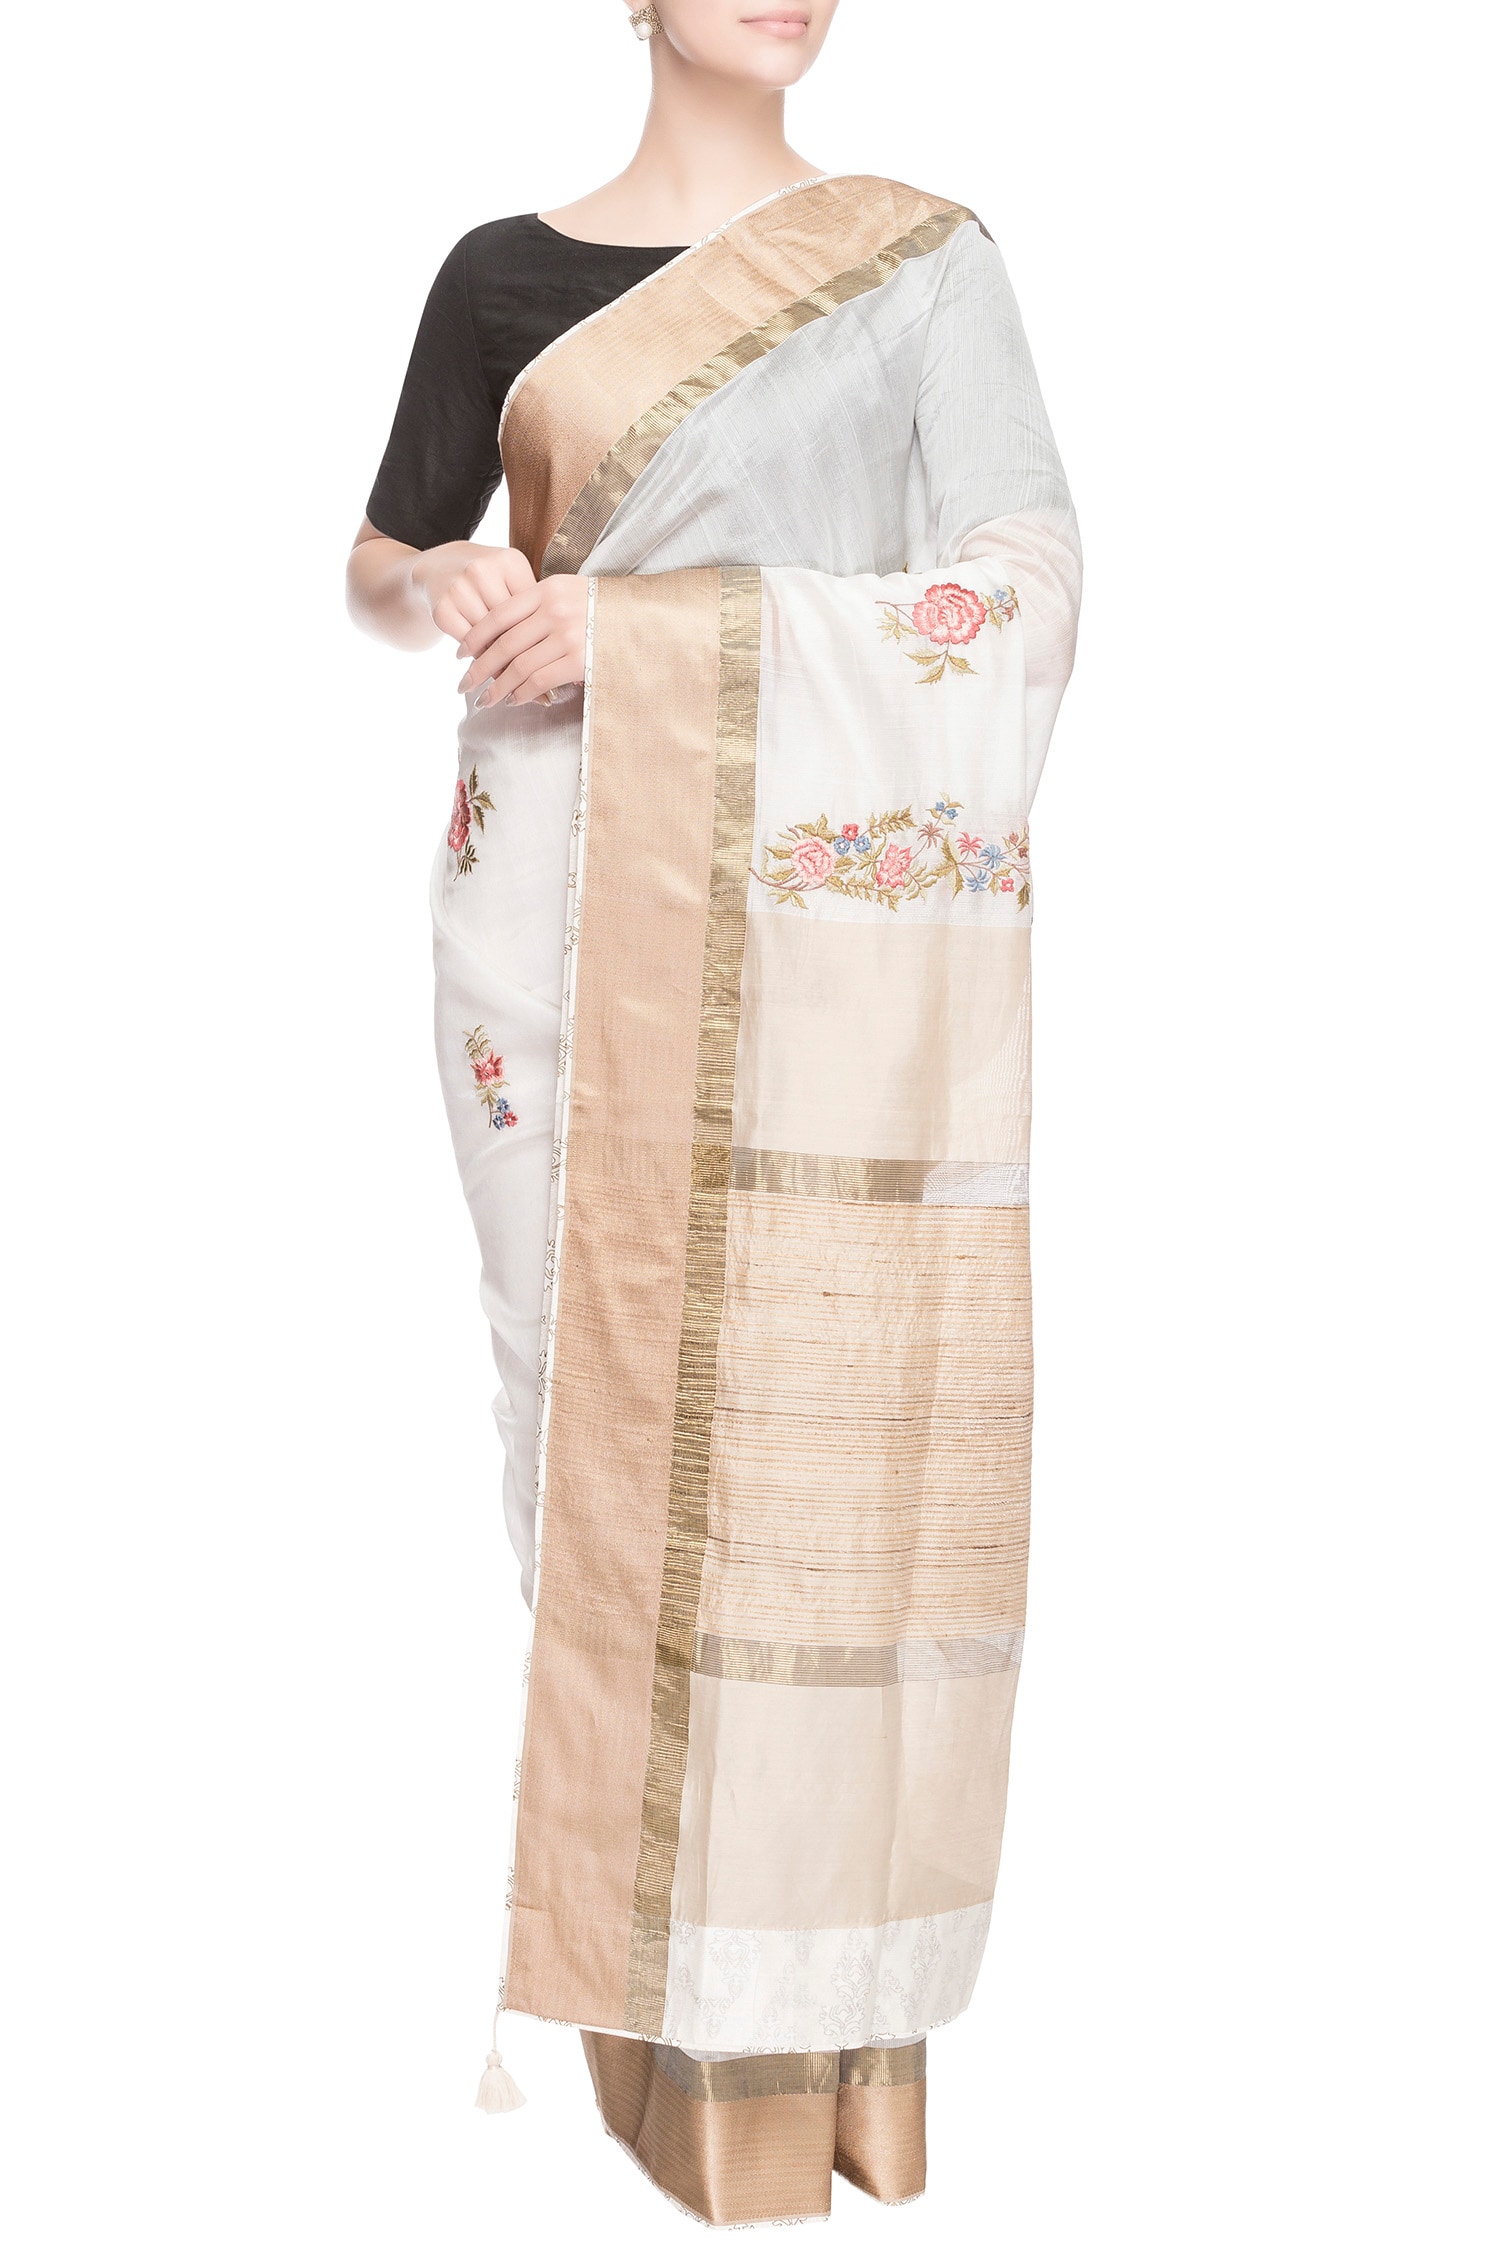 Prama by Pratima Pandey Gold Kora Cotton Embroidered Thread Work Chanderi Silk Saree For Women